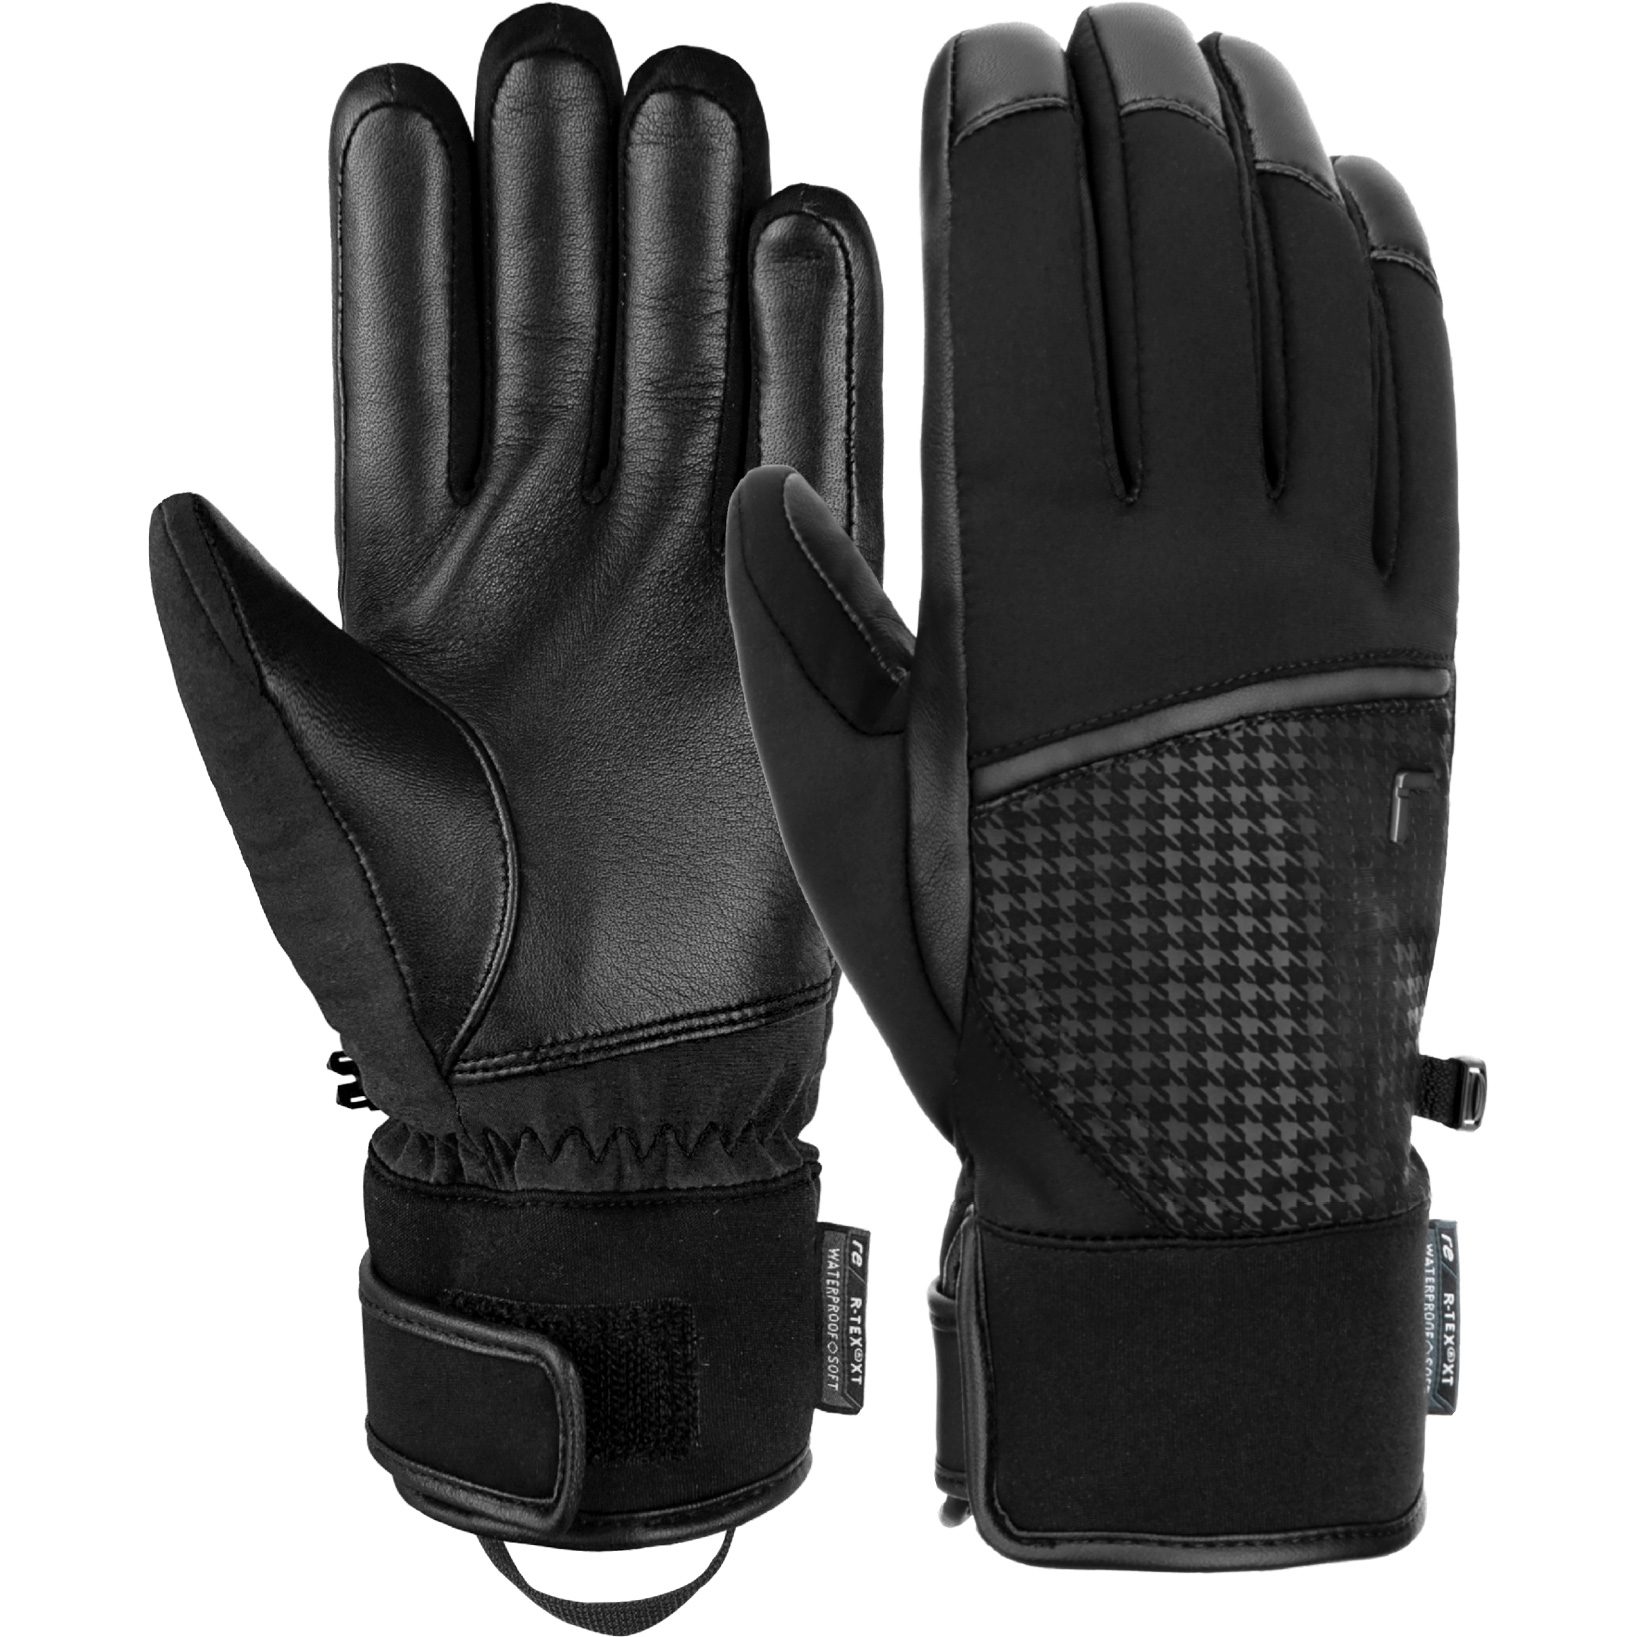 Reusch - Mara R-Tex® XT Handschuhe schwarz kaufen im Sport Bittl Shop